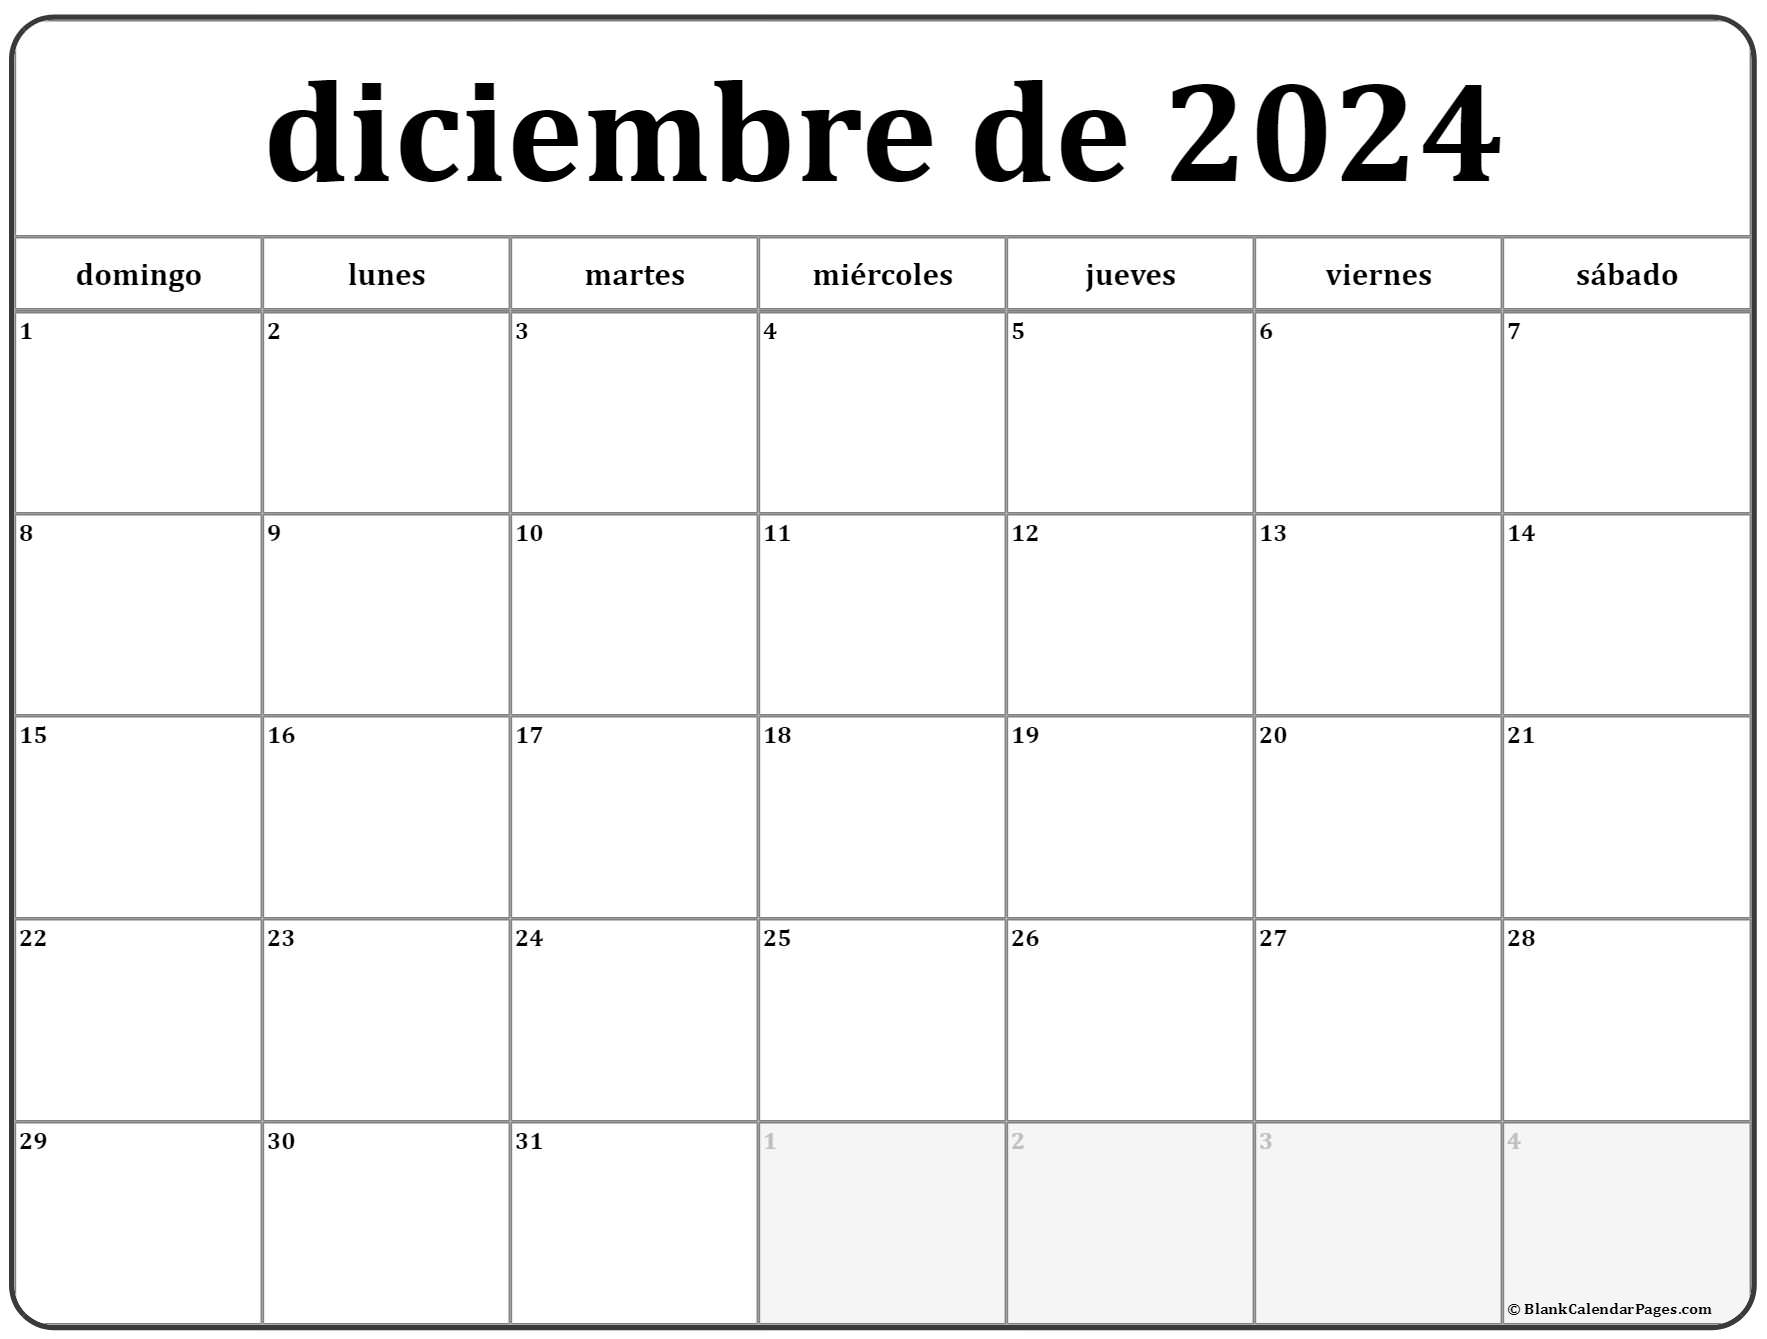 Calendario Diciembre 2022 Para Imprimir Gratis Una Casita De Papel